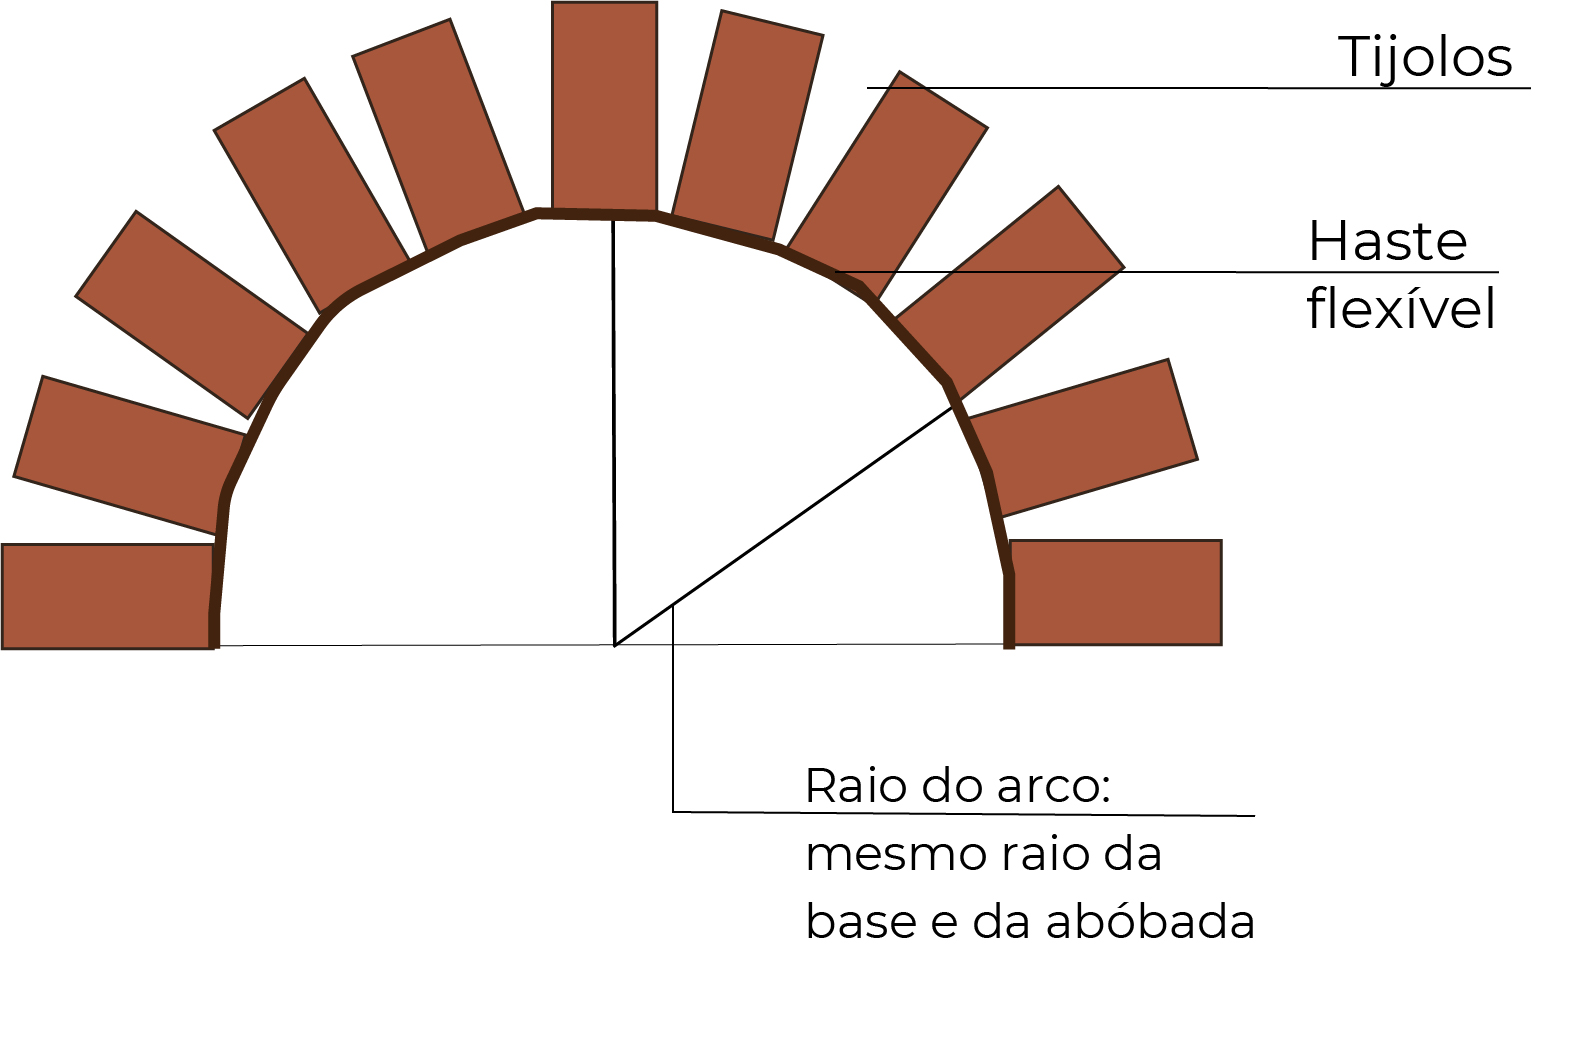 Desenho esquemático mostra o arco de abertura de um forninho de barro com 15 tijolos dispostos em forma de arco. Nele, está sinalizada por uma linha a haste flexível que delimita o arco, bem como o raio do arco, que deve ser o mesmo da base e da abóbada.